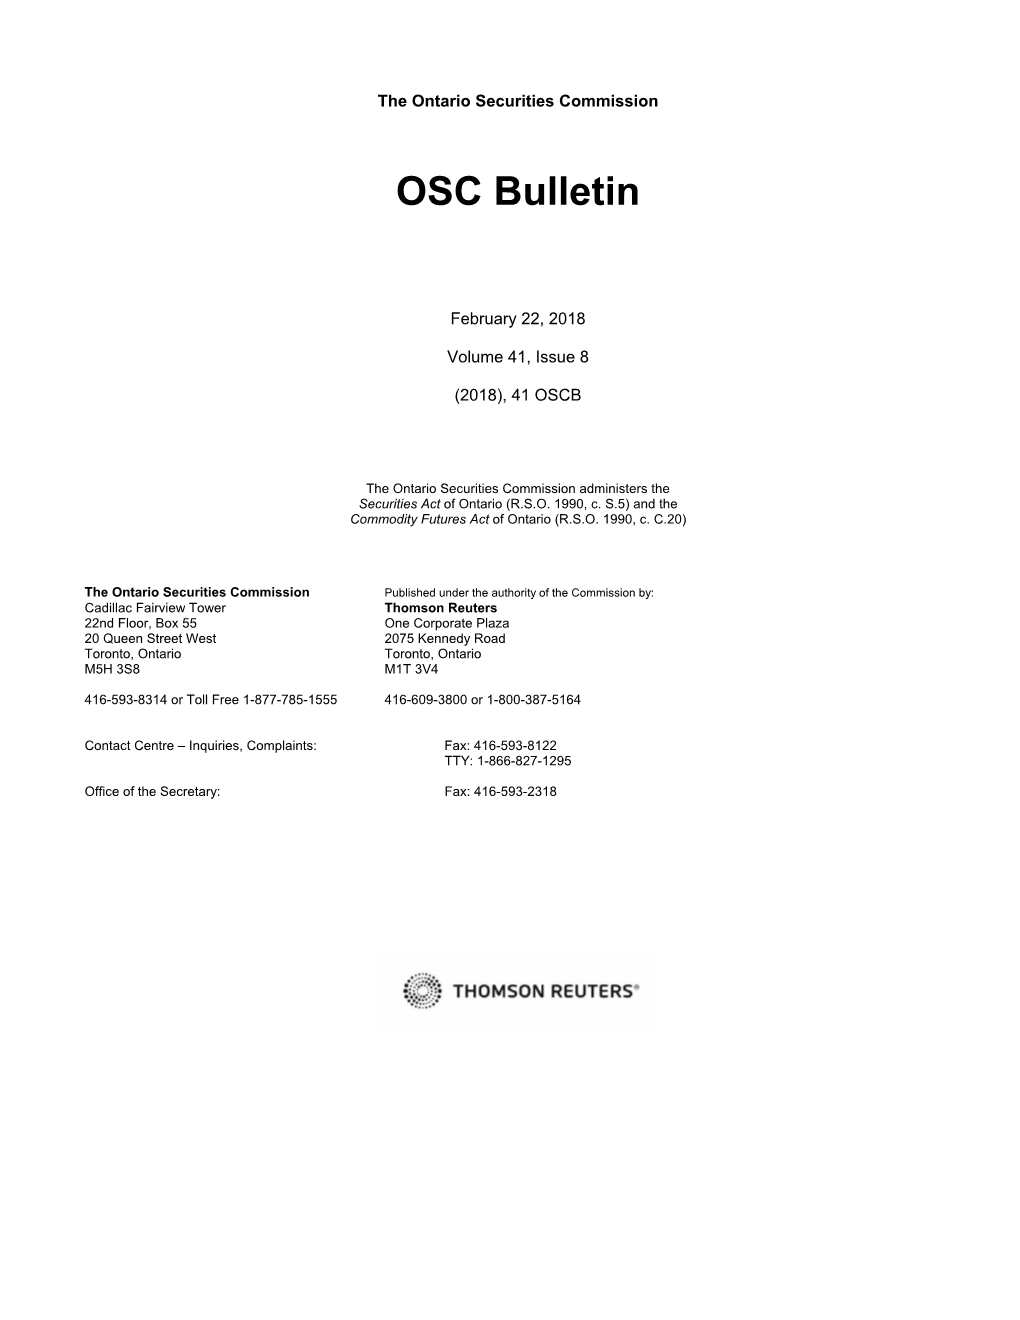 OSC Bulletin